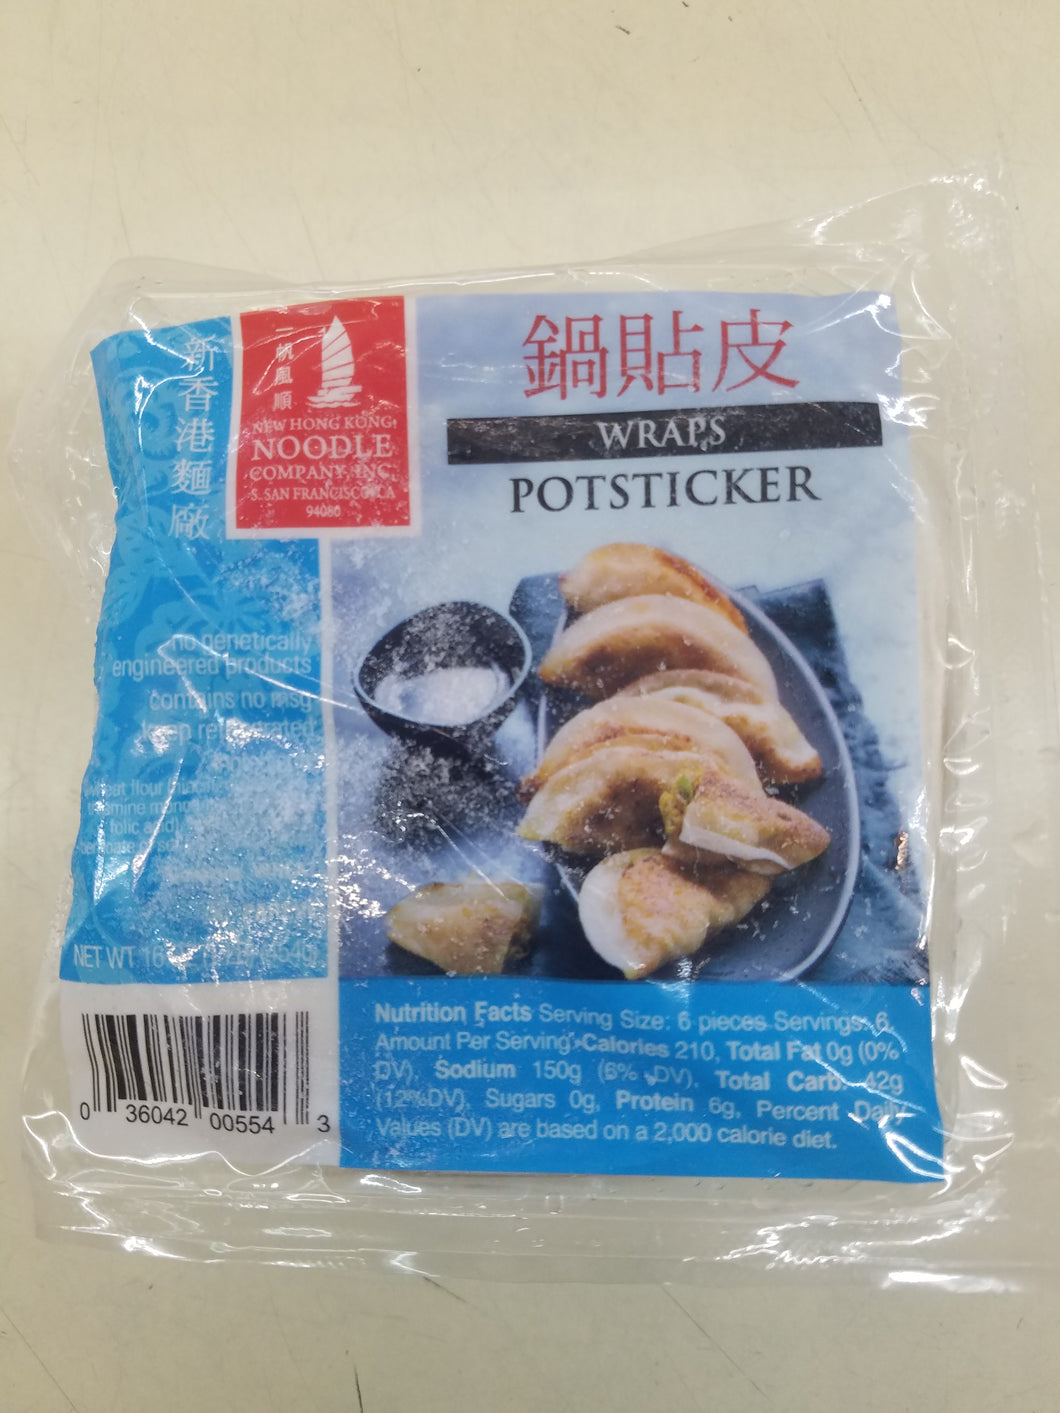 New Hong Kong Potsticker Wraps